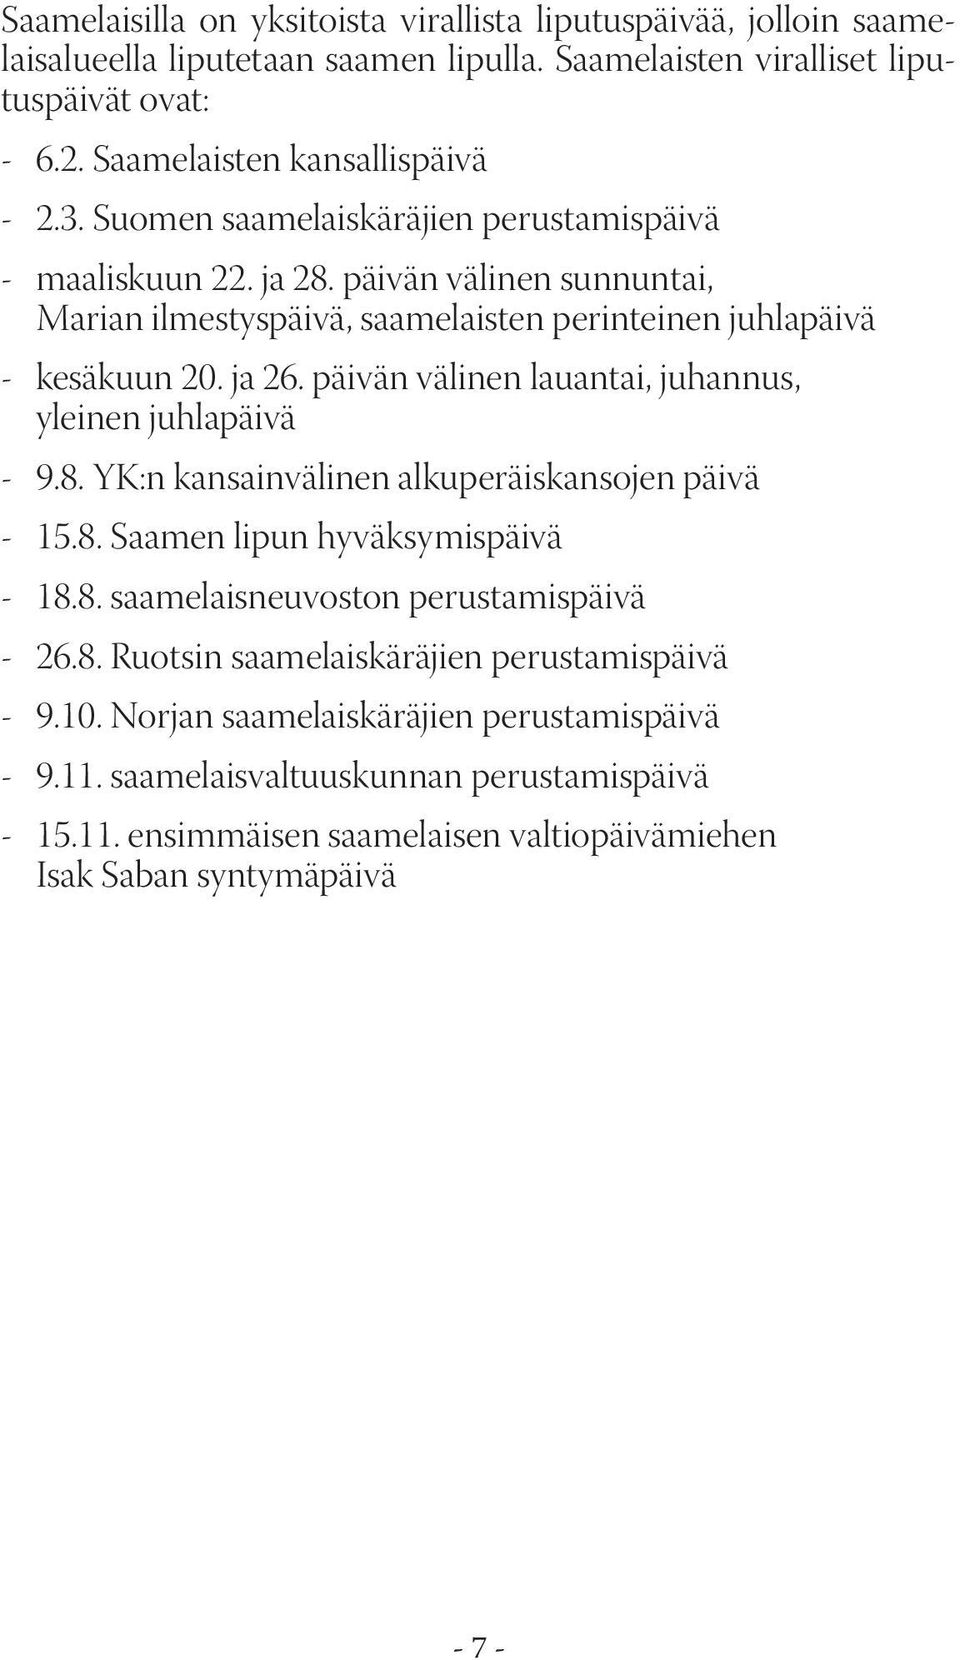 päivän välinen lauantai, juhannus, yleinen juhlapäivä - 9.8. YK:n kansainvälinen alkuperäiskansojen päivä - 15.8. Saamen lipun hyväksymispäivä - 18.8. saamelaisneuvoston perustamispäivä - 26.8. Ruotsin saamelaiskäräjien perustamispäivä - 9.